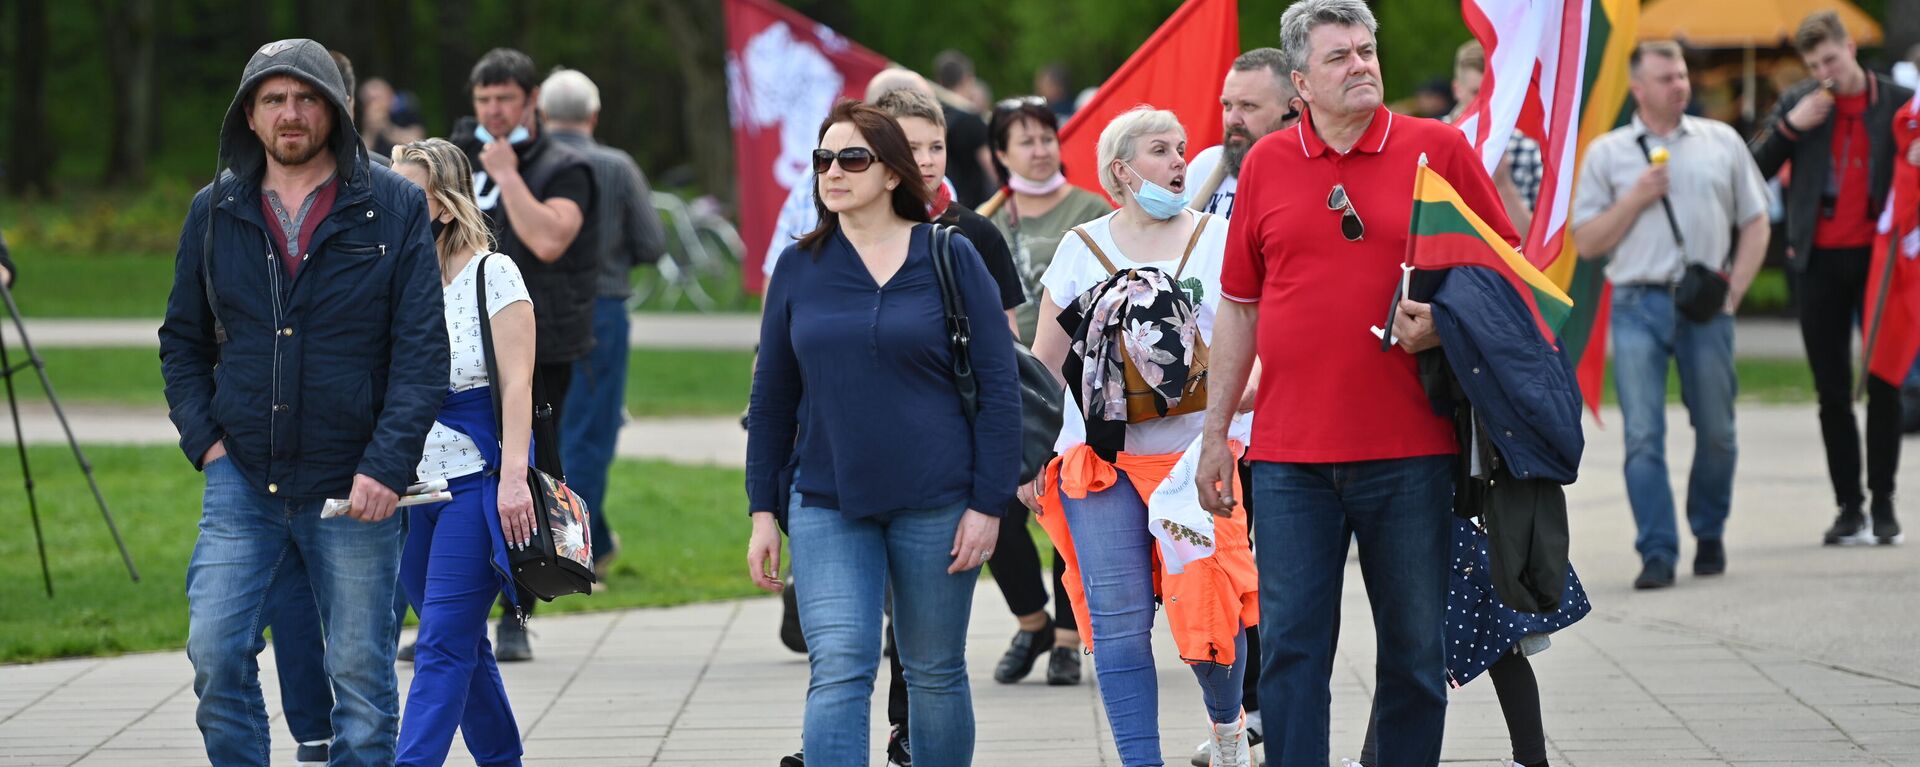 Великий марш в защиту семей в Вильнюсе - Sputnik Литва, 1920, 20.05.2021